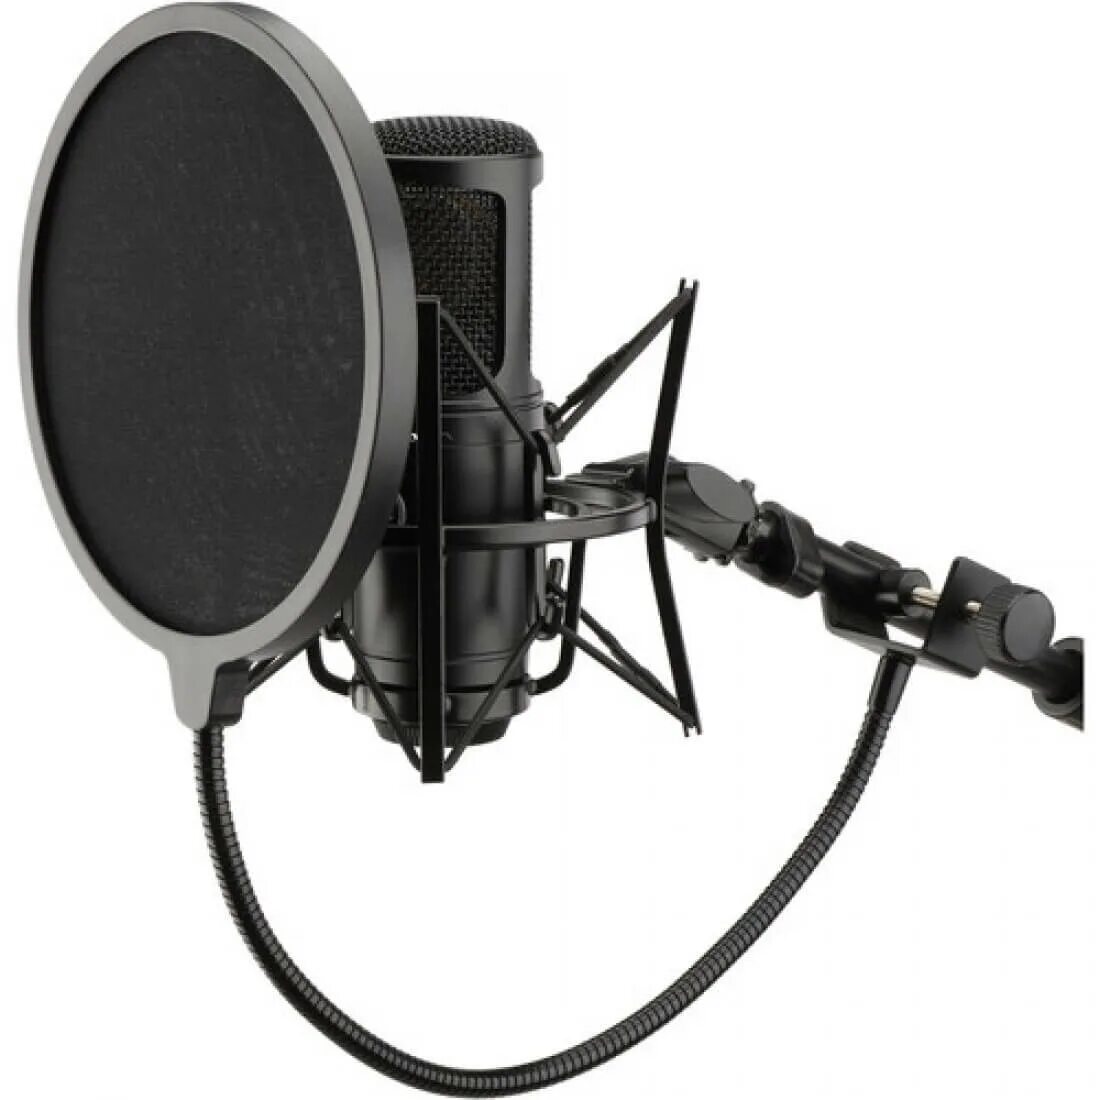 Поп фильтр ROXTONE msa040. Recording Tools MC-700 студийный конденсаторный микрофон. Микрофон конденсаторный Blue поп фильтр. Микрофон звукозаписи Superlux держатель. Микрофоны с шумоподавлением купить